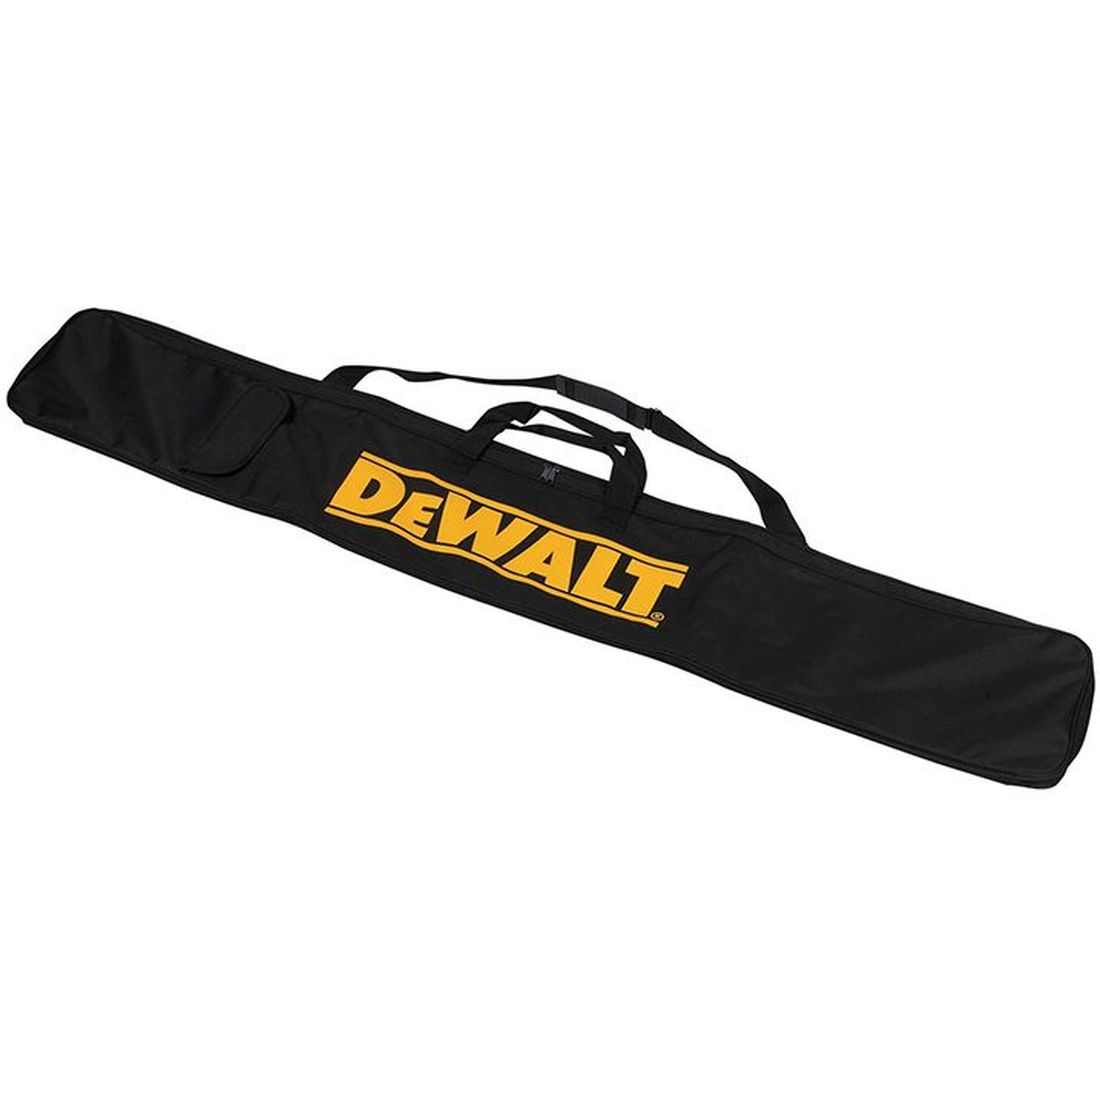 DEWALT DWS5025 Plunge Saw Guide Rail Bag 